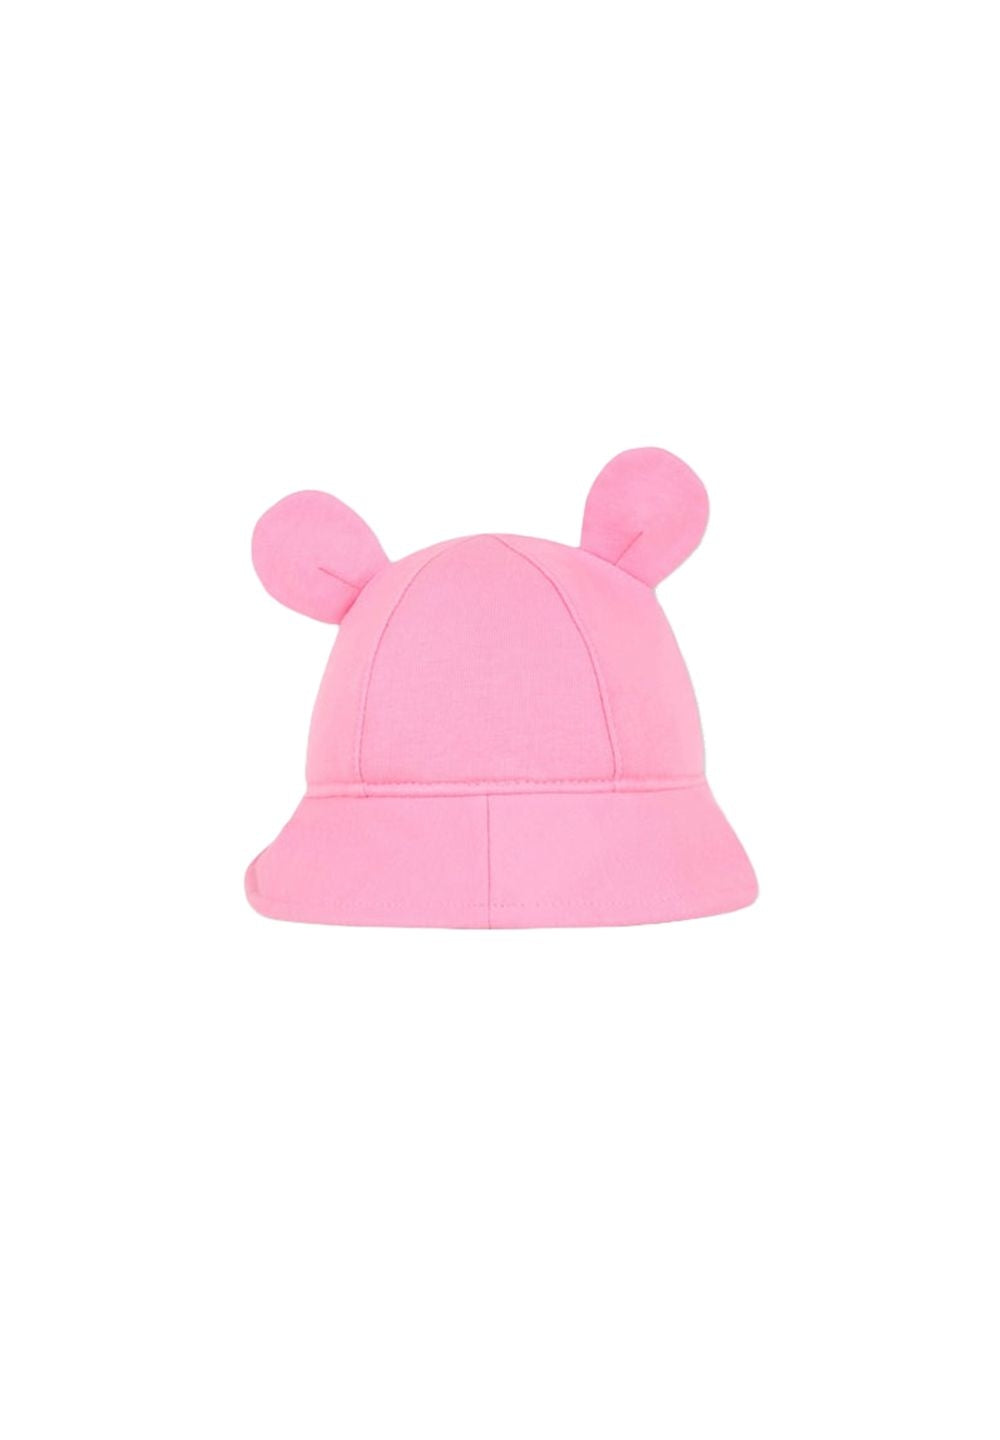 Cappello rosa per bambina - Primamoda kids